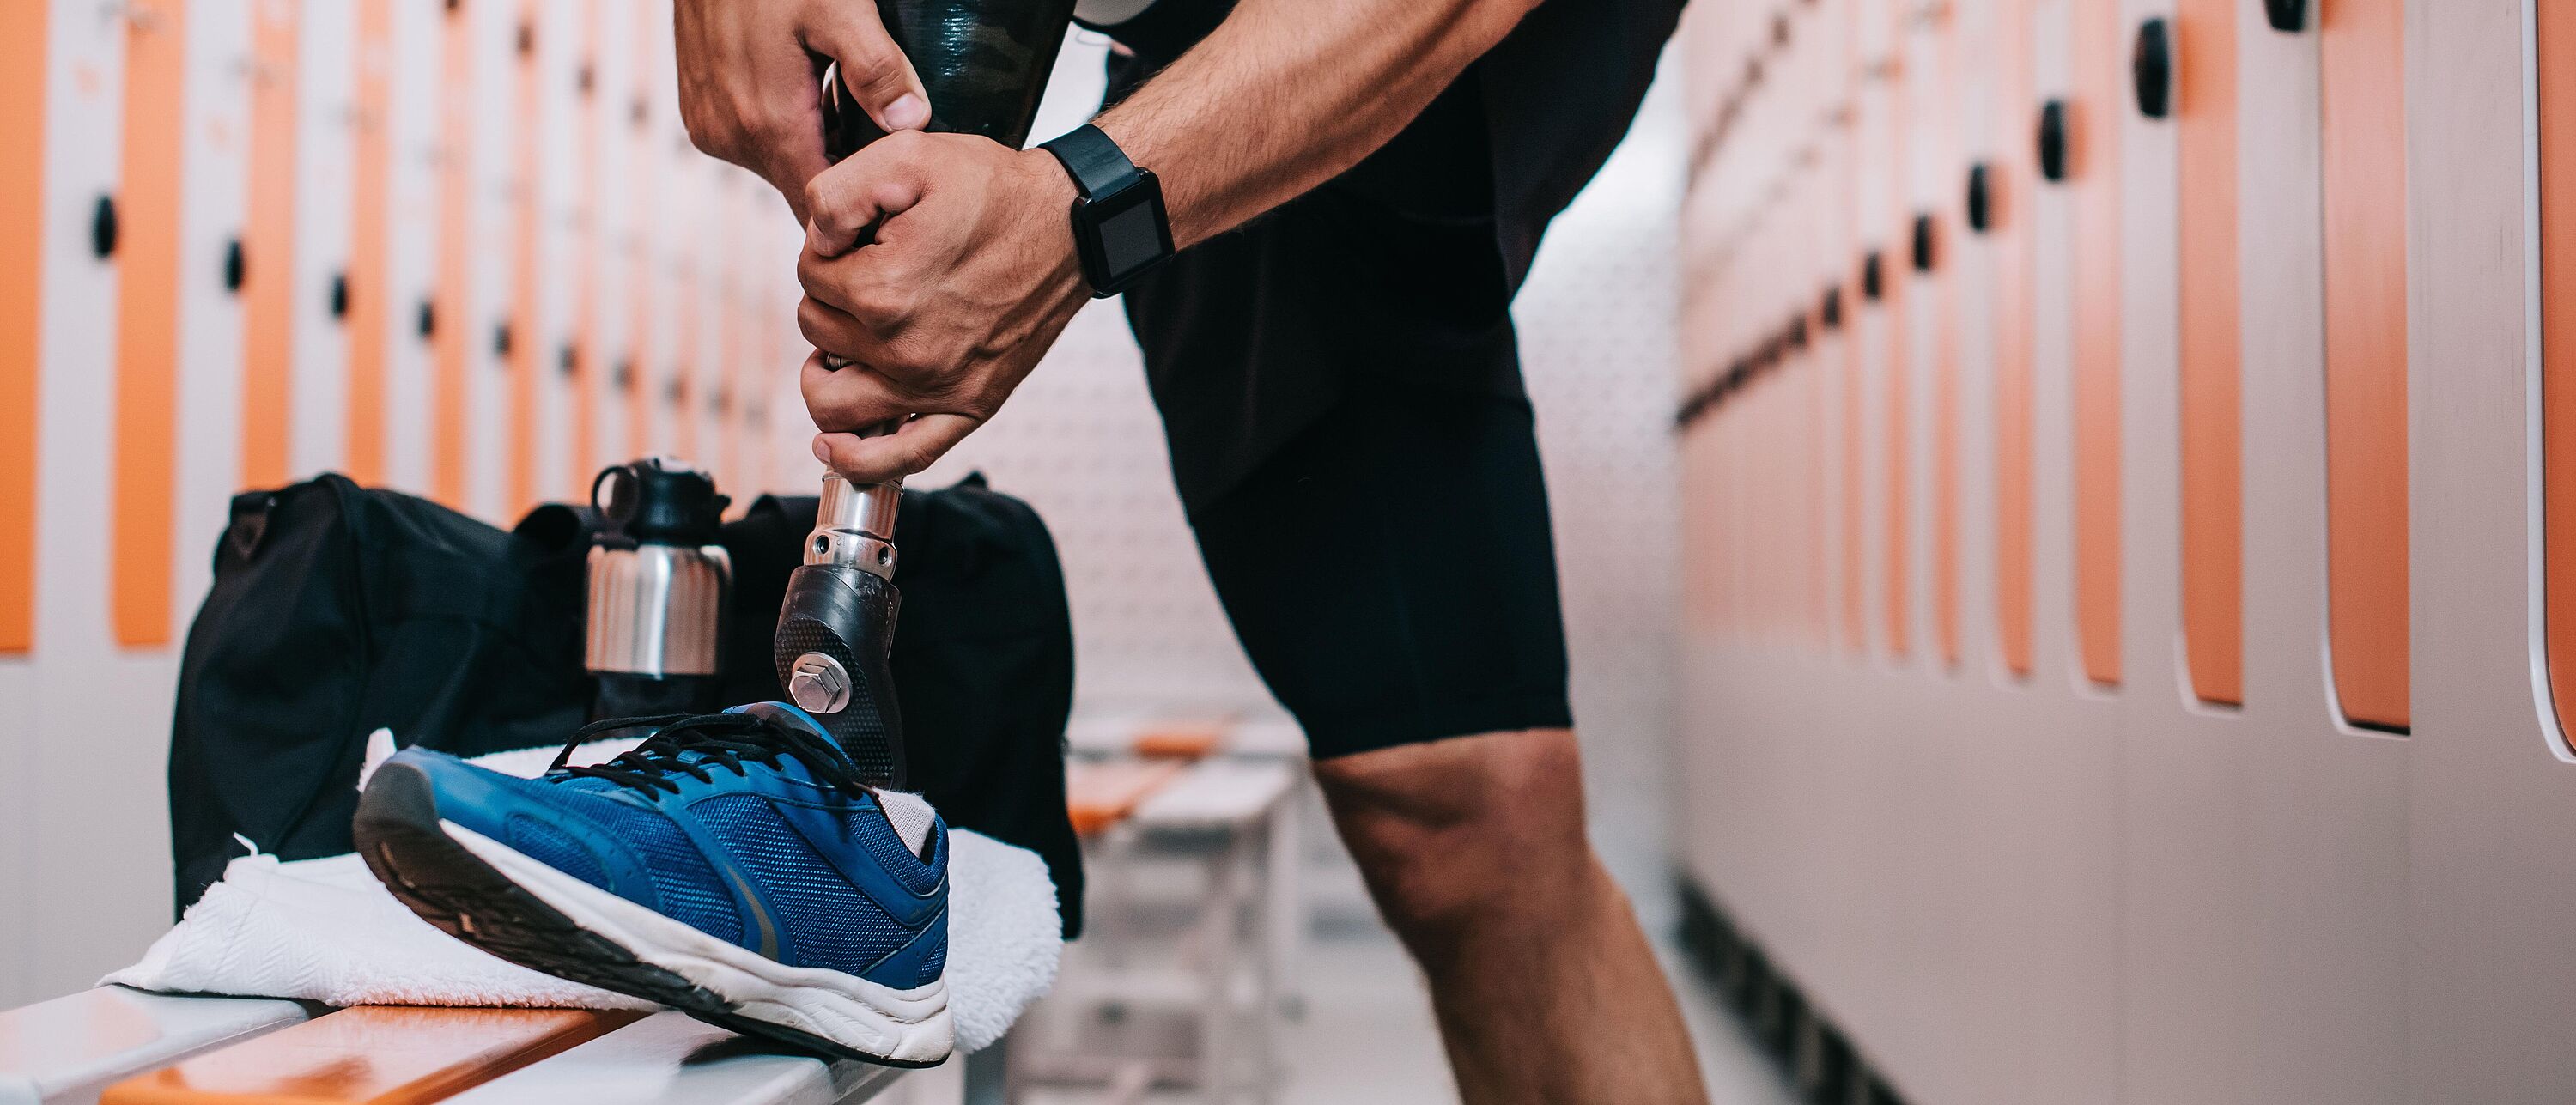 Nahaufnahme eines Sportlers, der in der Umkleidekabine im Fitnessstudio eine Beinprothese anzieht